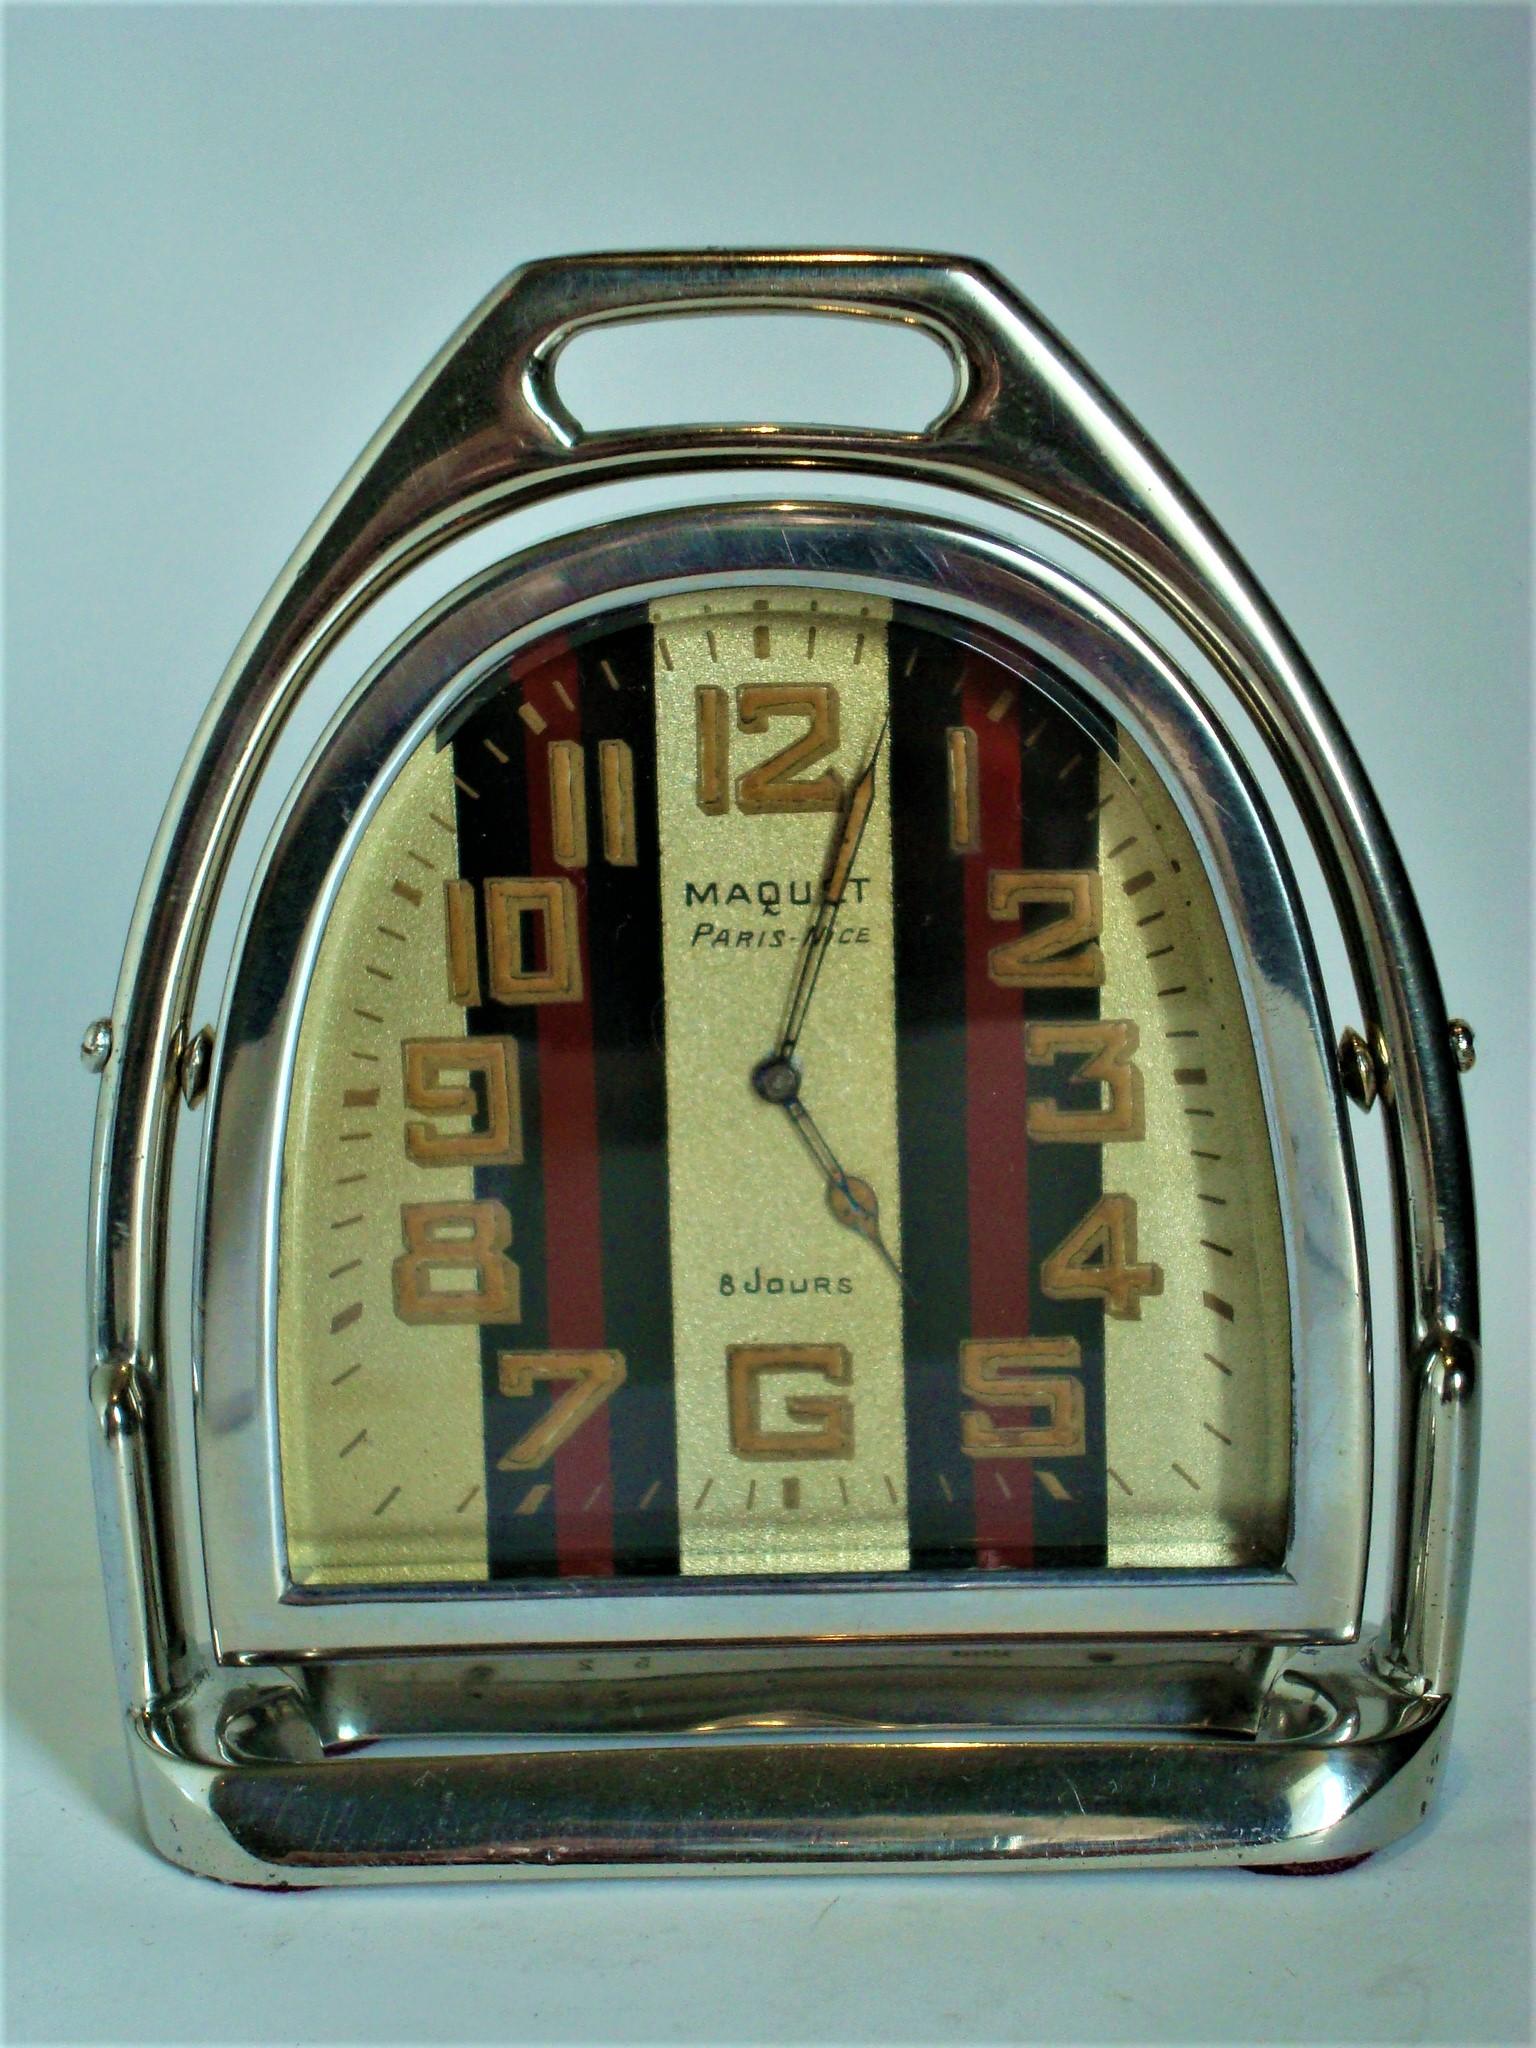 Luxury Vintage Stirrup Table Clock Maquet Paris, Nice 8 Jours, France, 1940s For Sale 1